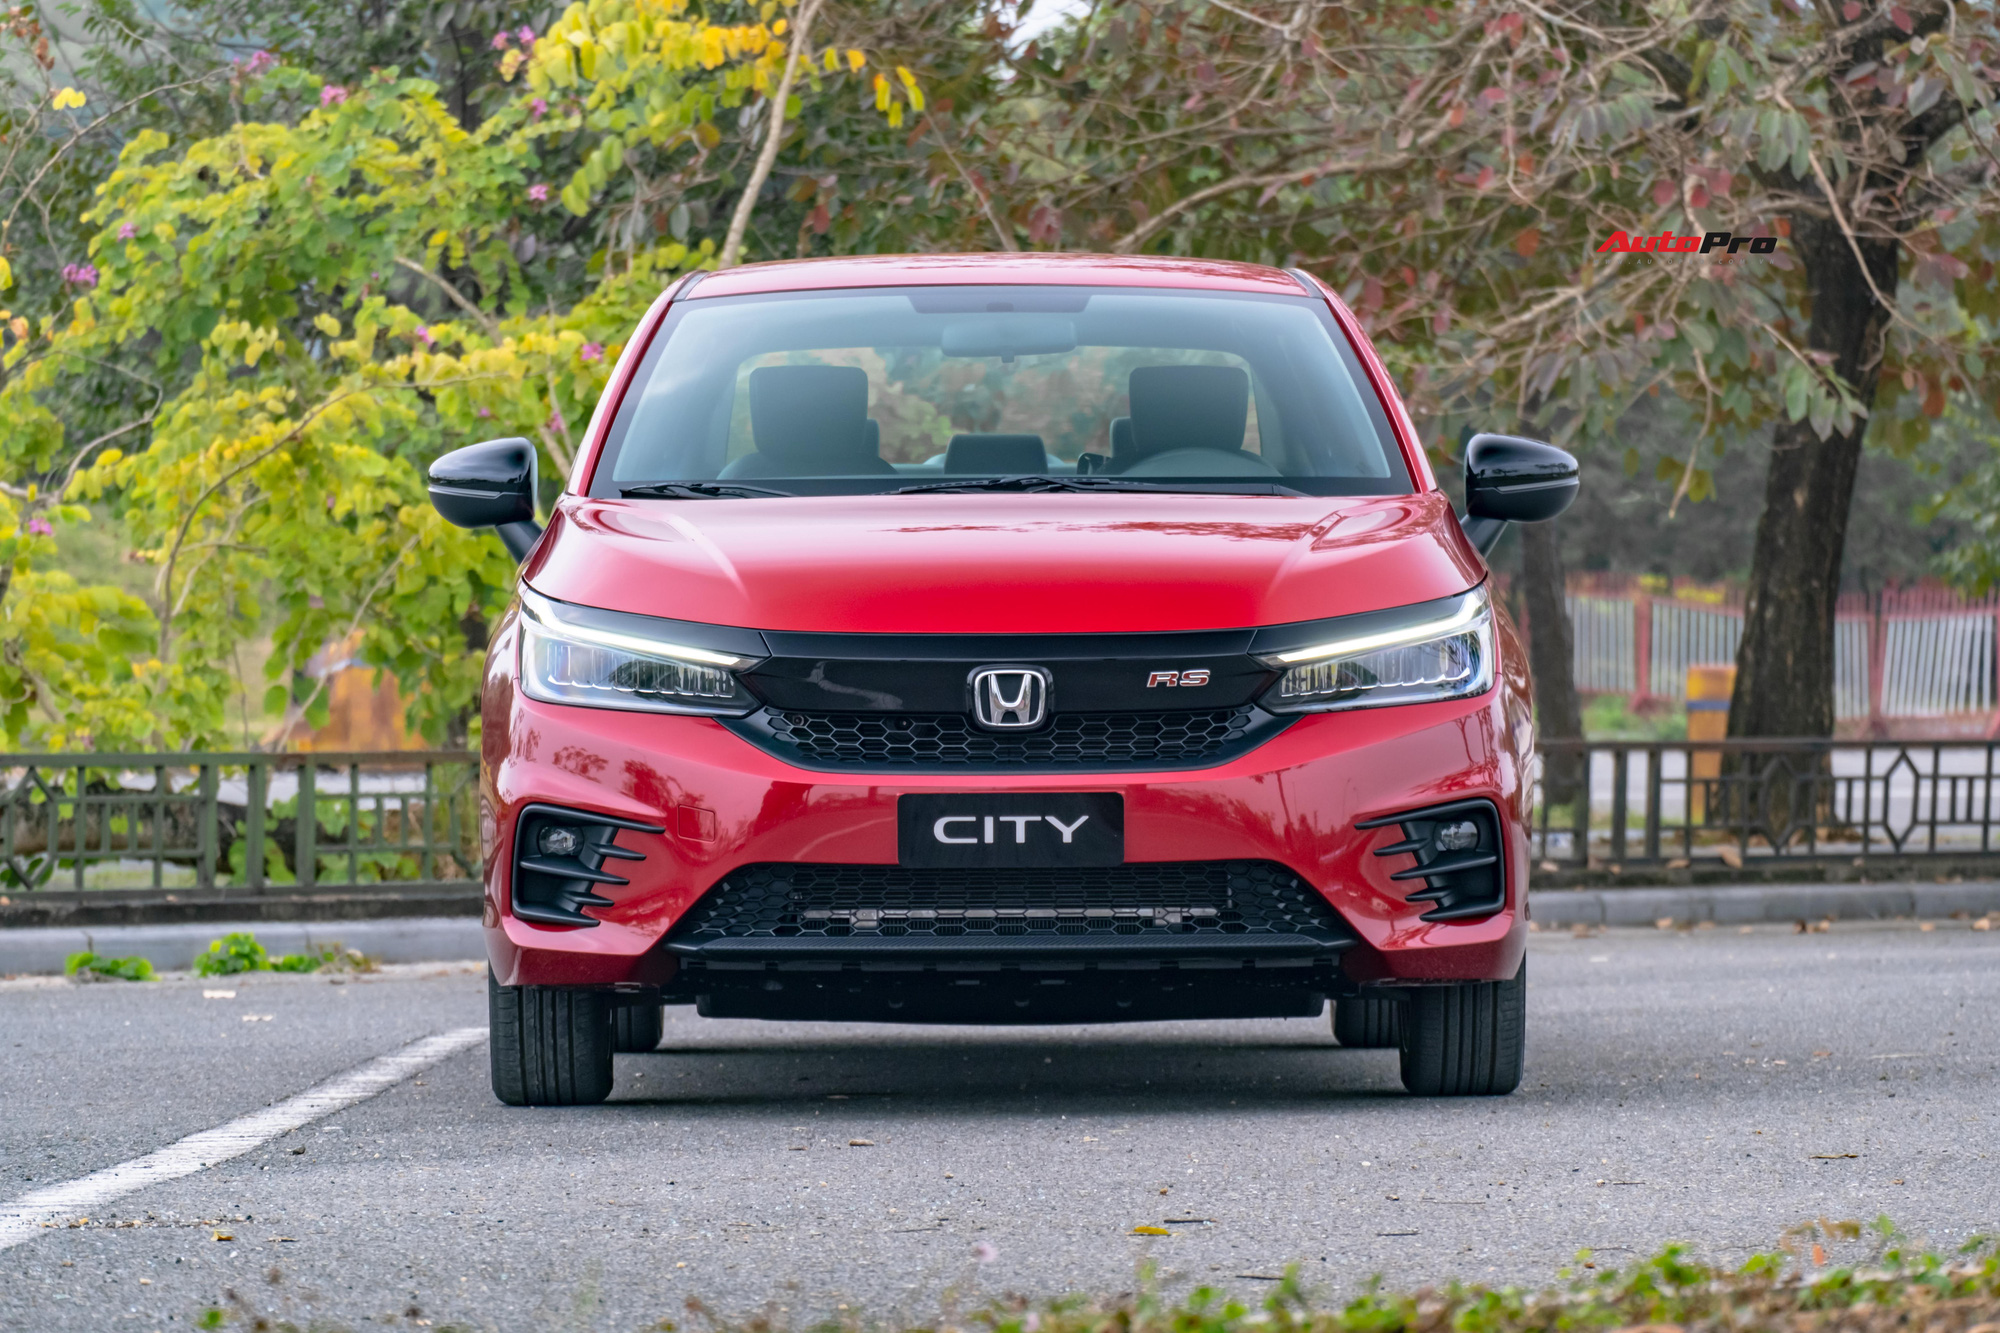 Đánh giá nhanh Honda City 2020 giá 599 triệu đồng: Những điều hợp lý khiến Accent phải giật mình - Ảnh 10.